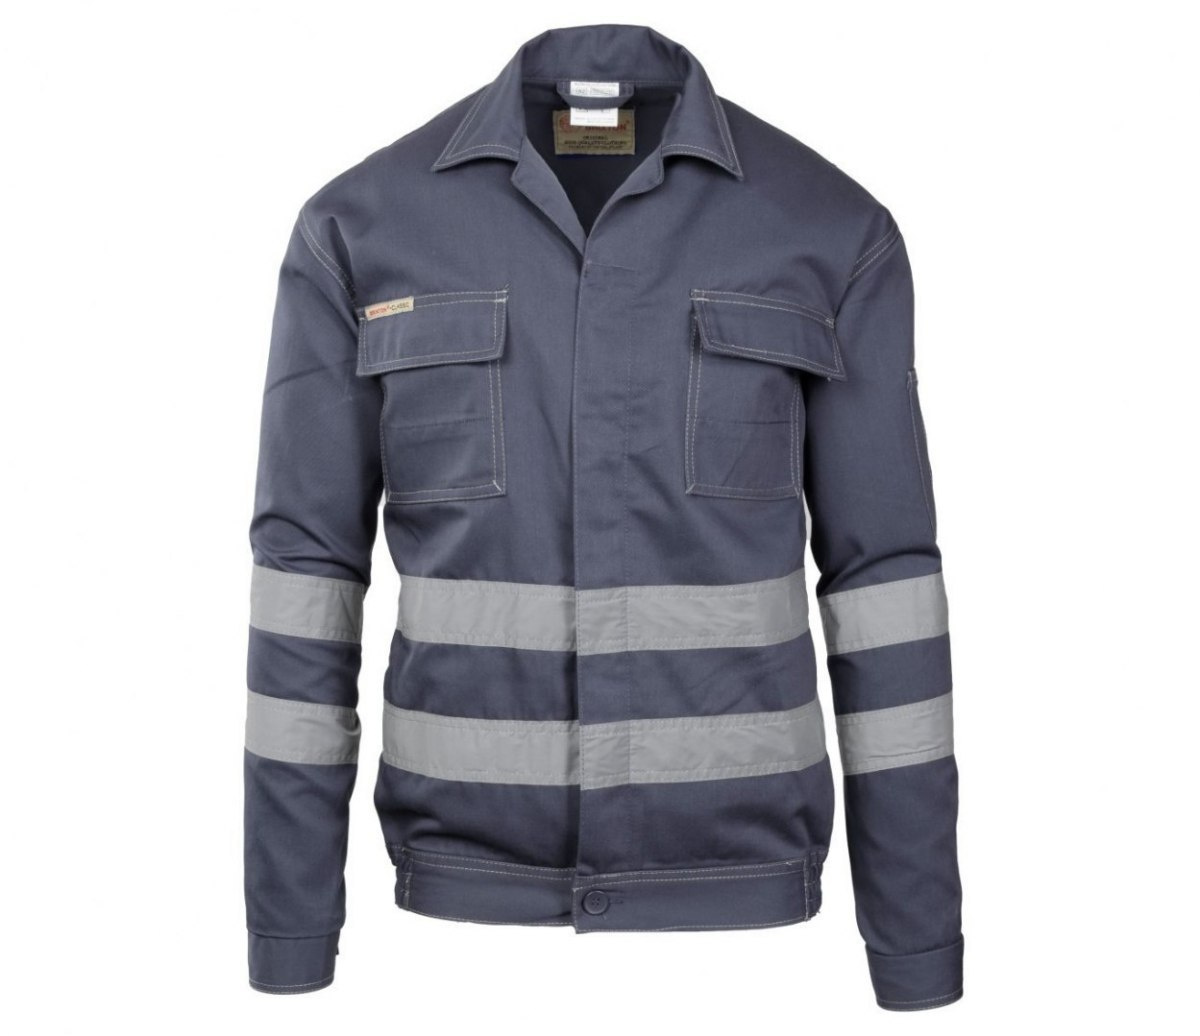 BRIXTON CLASSIC - Bluza robocza z pasami odbalskowymi - Sklep BHP - odzież robocza szara